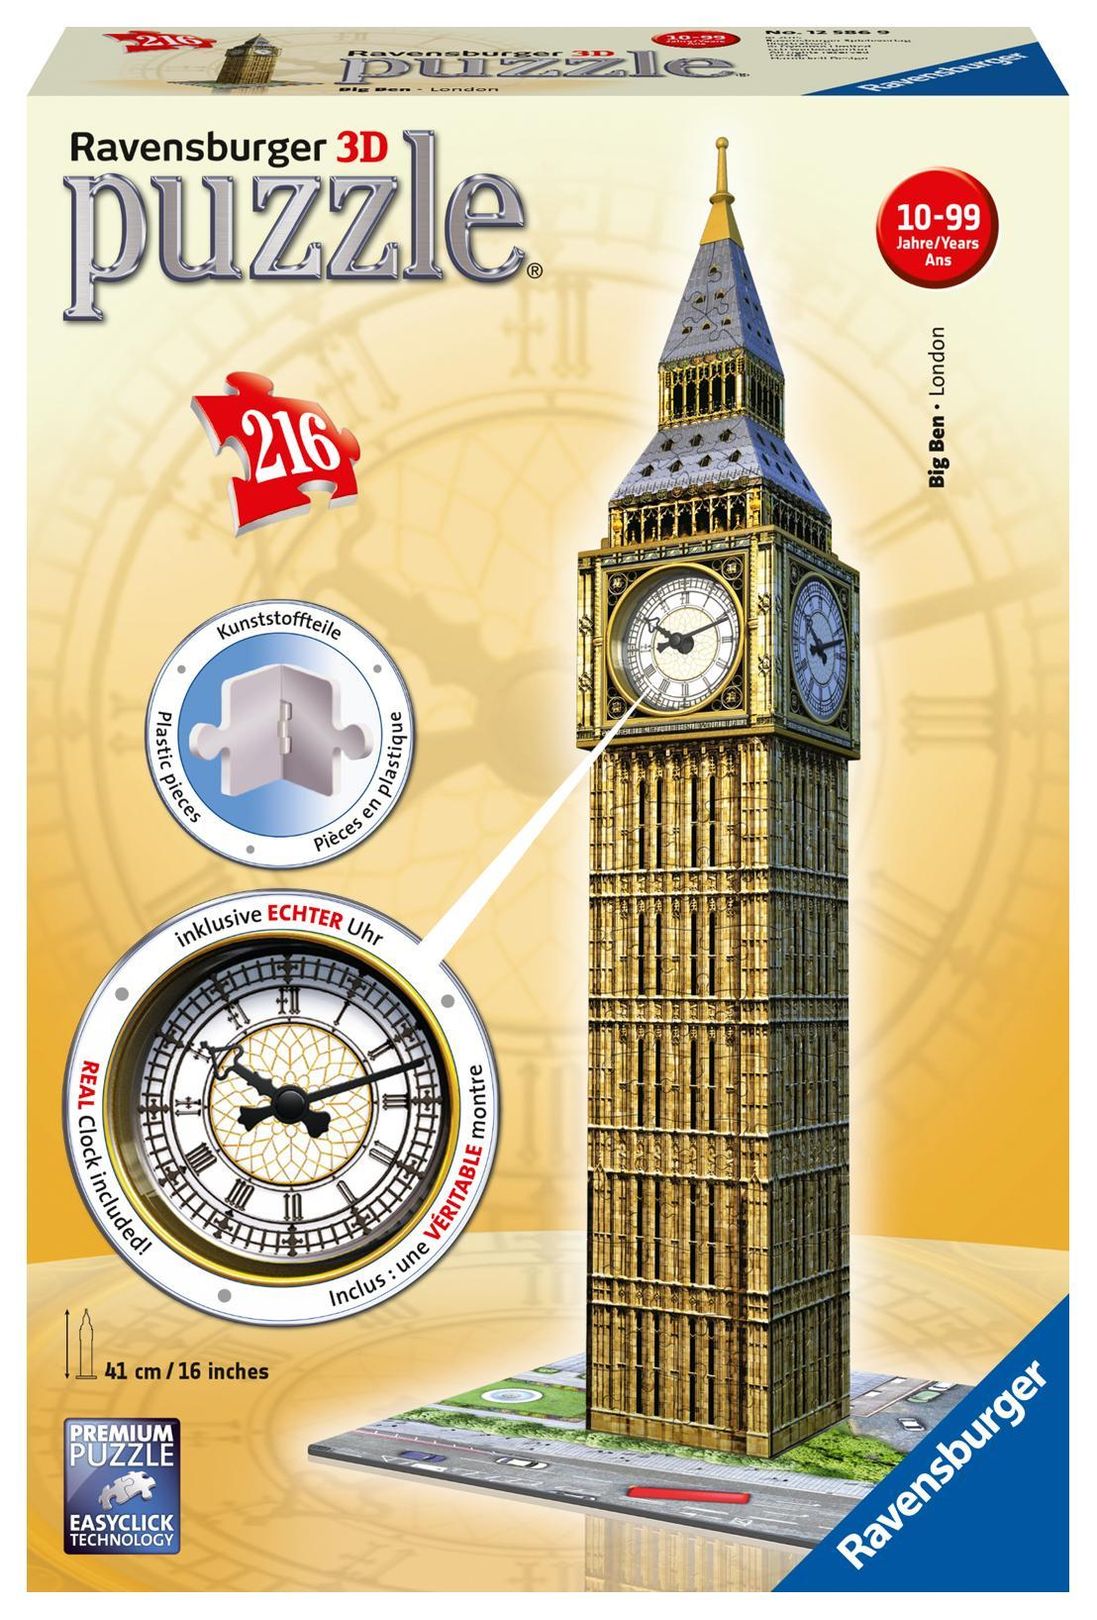 Ravensburger 3D Puzzle 12586 - Big Ben mit Uhr - 216 Teile - Das  weltbekannte Londoner Wahrzeichen zum selber Puzzeln ab | Weltbild.at